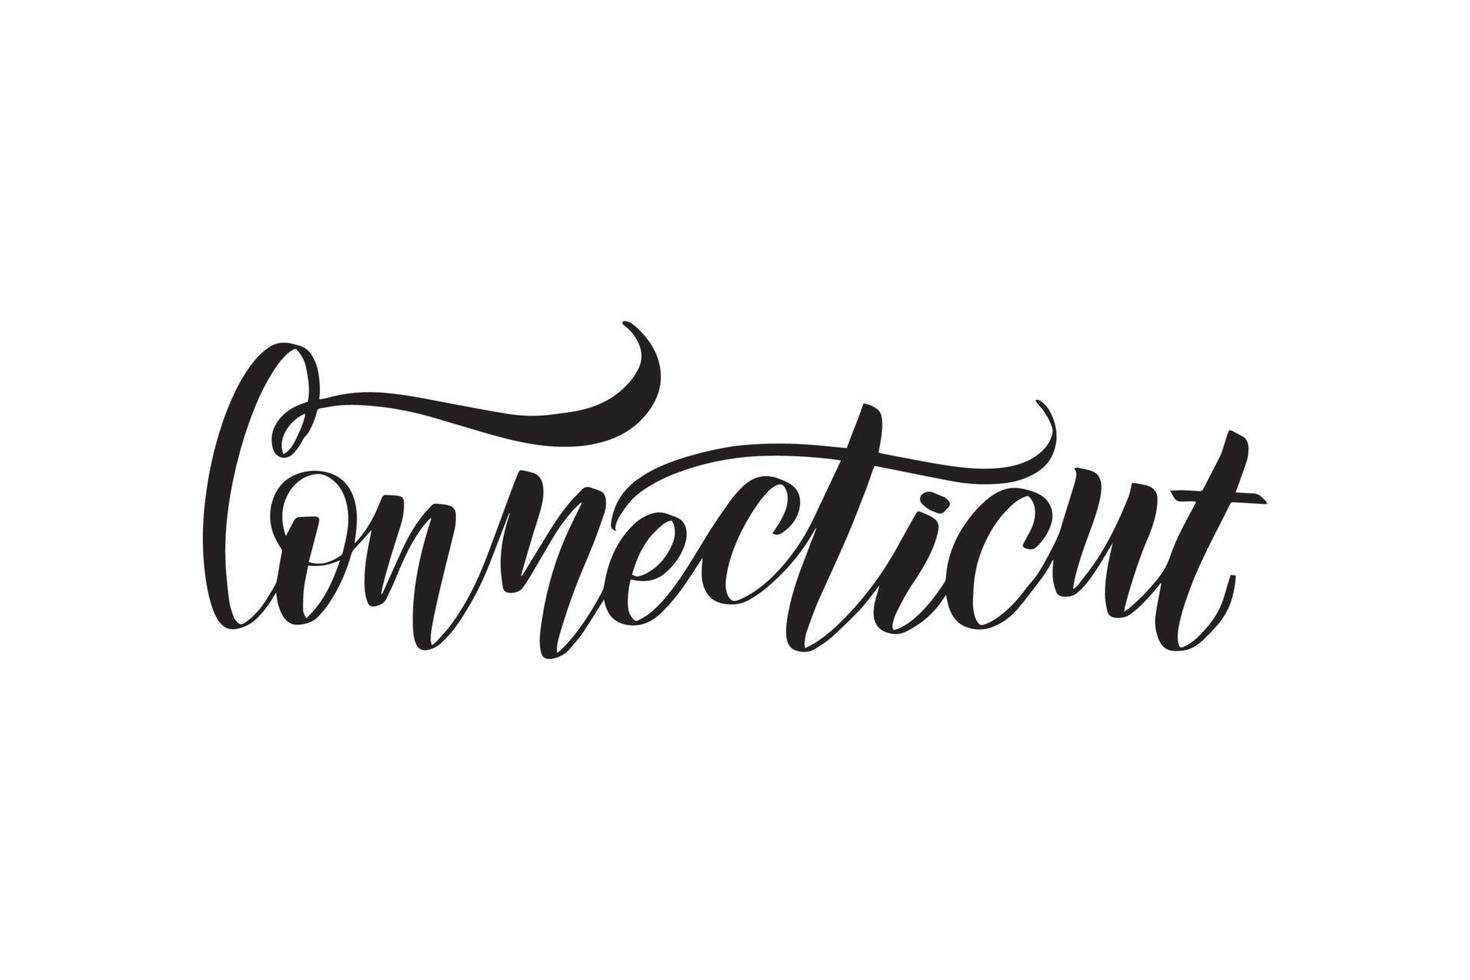 ispirazione scritta a mano pennello lettering Connecticut. illustrazione di calligrafia vettoriale isolata su sfondo bianco. tipografia per striscioni, distintivi, cartoline, magliette, stampe, poster.